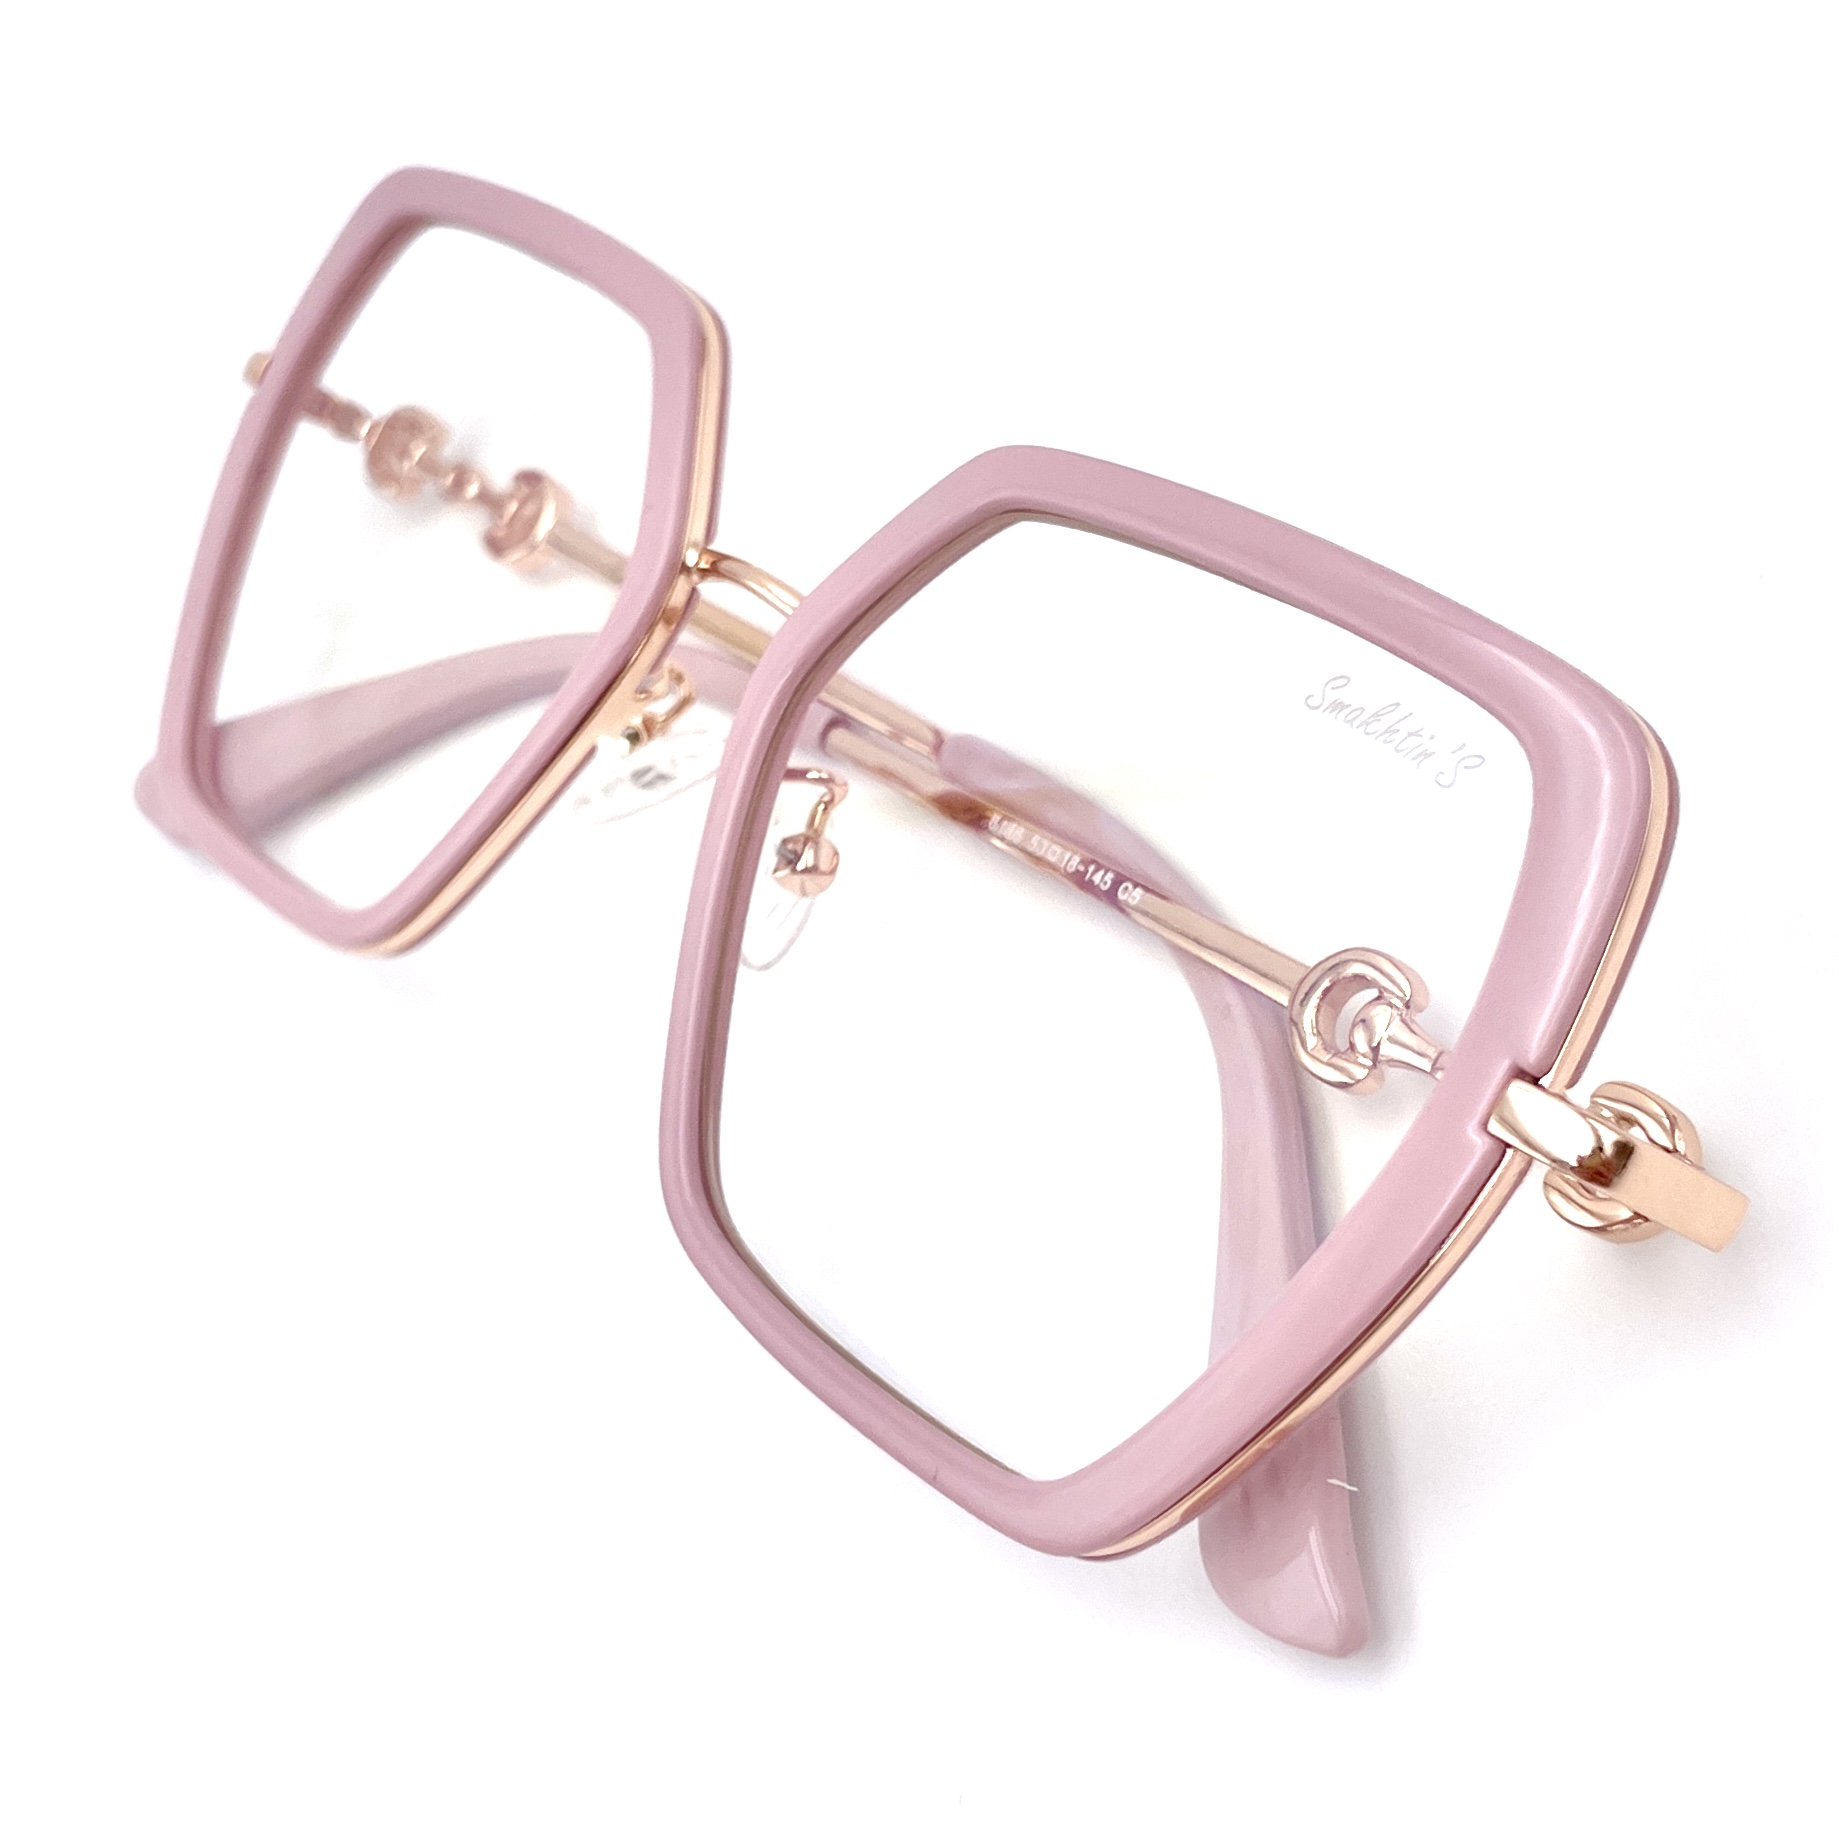 Очки для компьютера Smakhtin'S eyewear & accessories золотистый, розовый (6186C5)